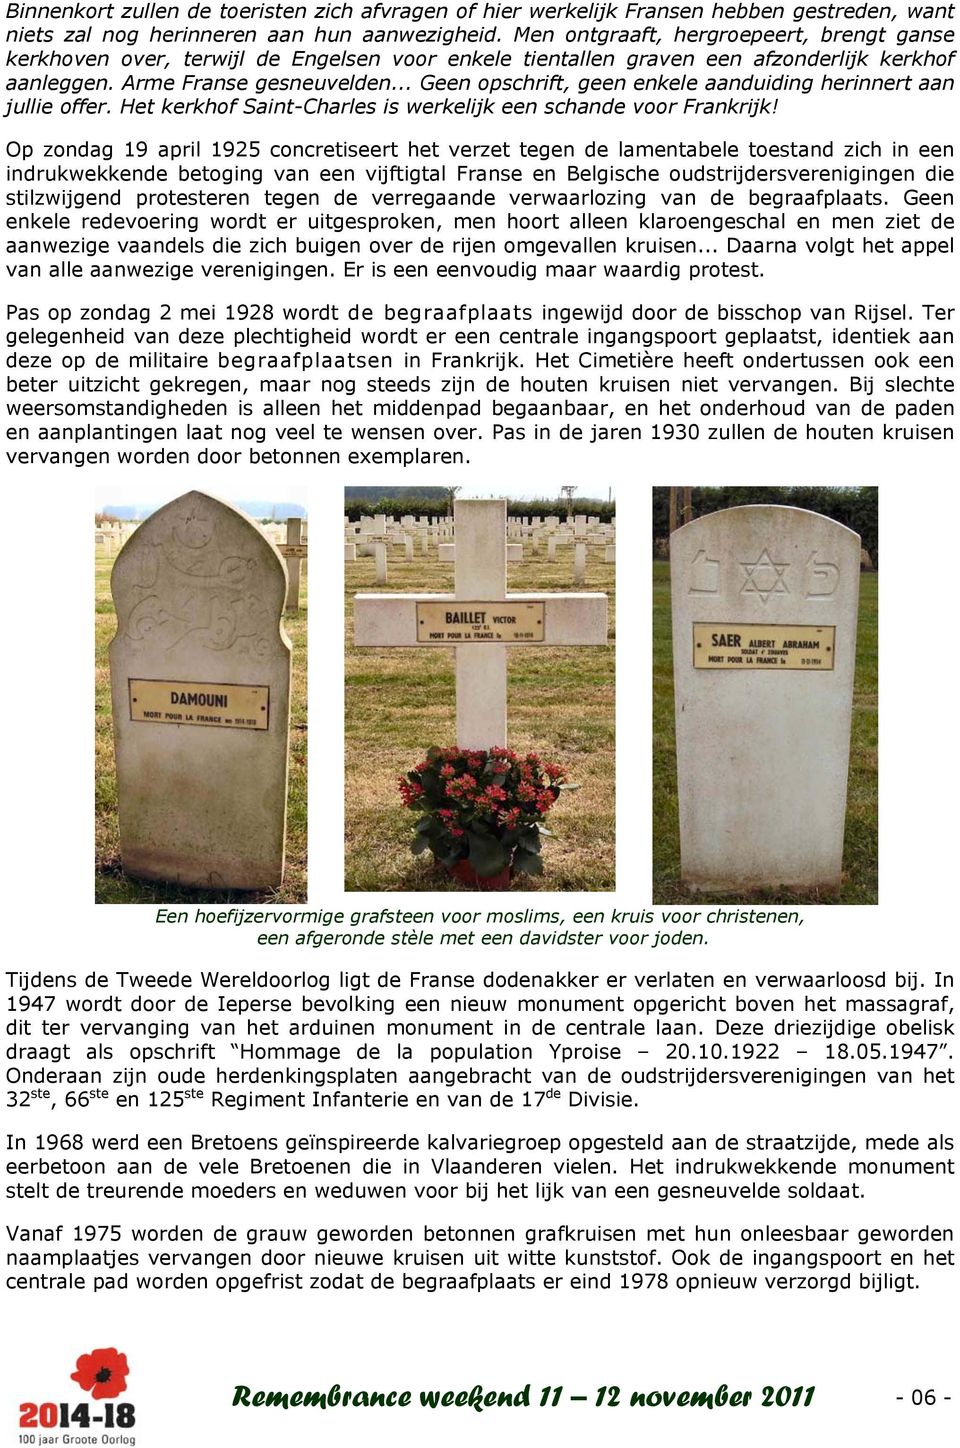 .. Geen opschrift, geen enkele aanduiding herinnert aan jullie offer. Het kerkhof Saint-Charles is werkelijk een schande voor Frankrijk!